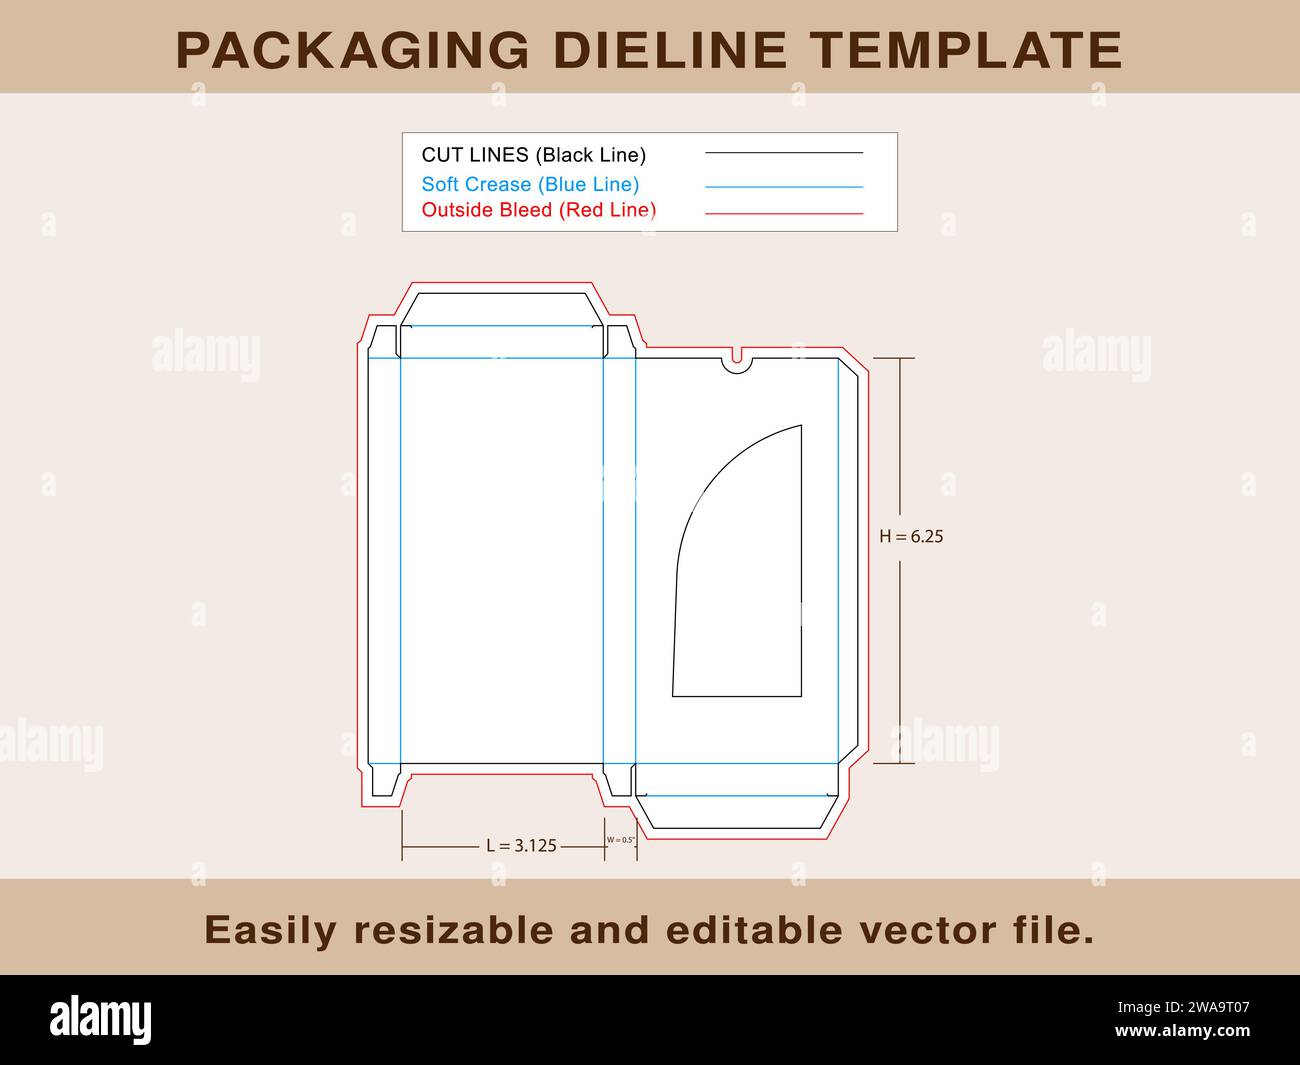 Scatola del cioccolato con finestra Dieline Template Editable Vector file. Illustrazione Vettoriale